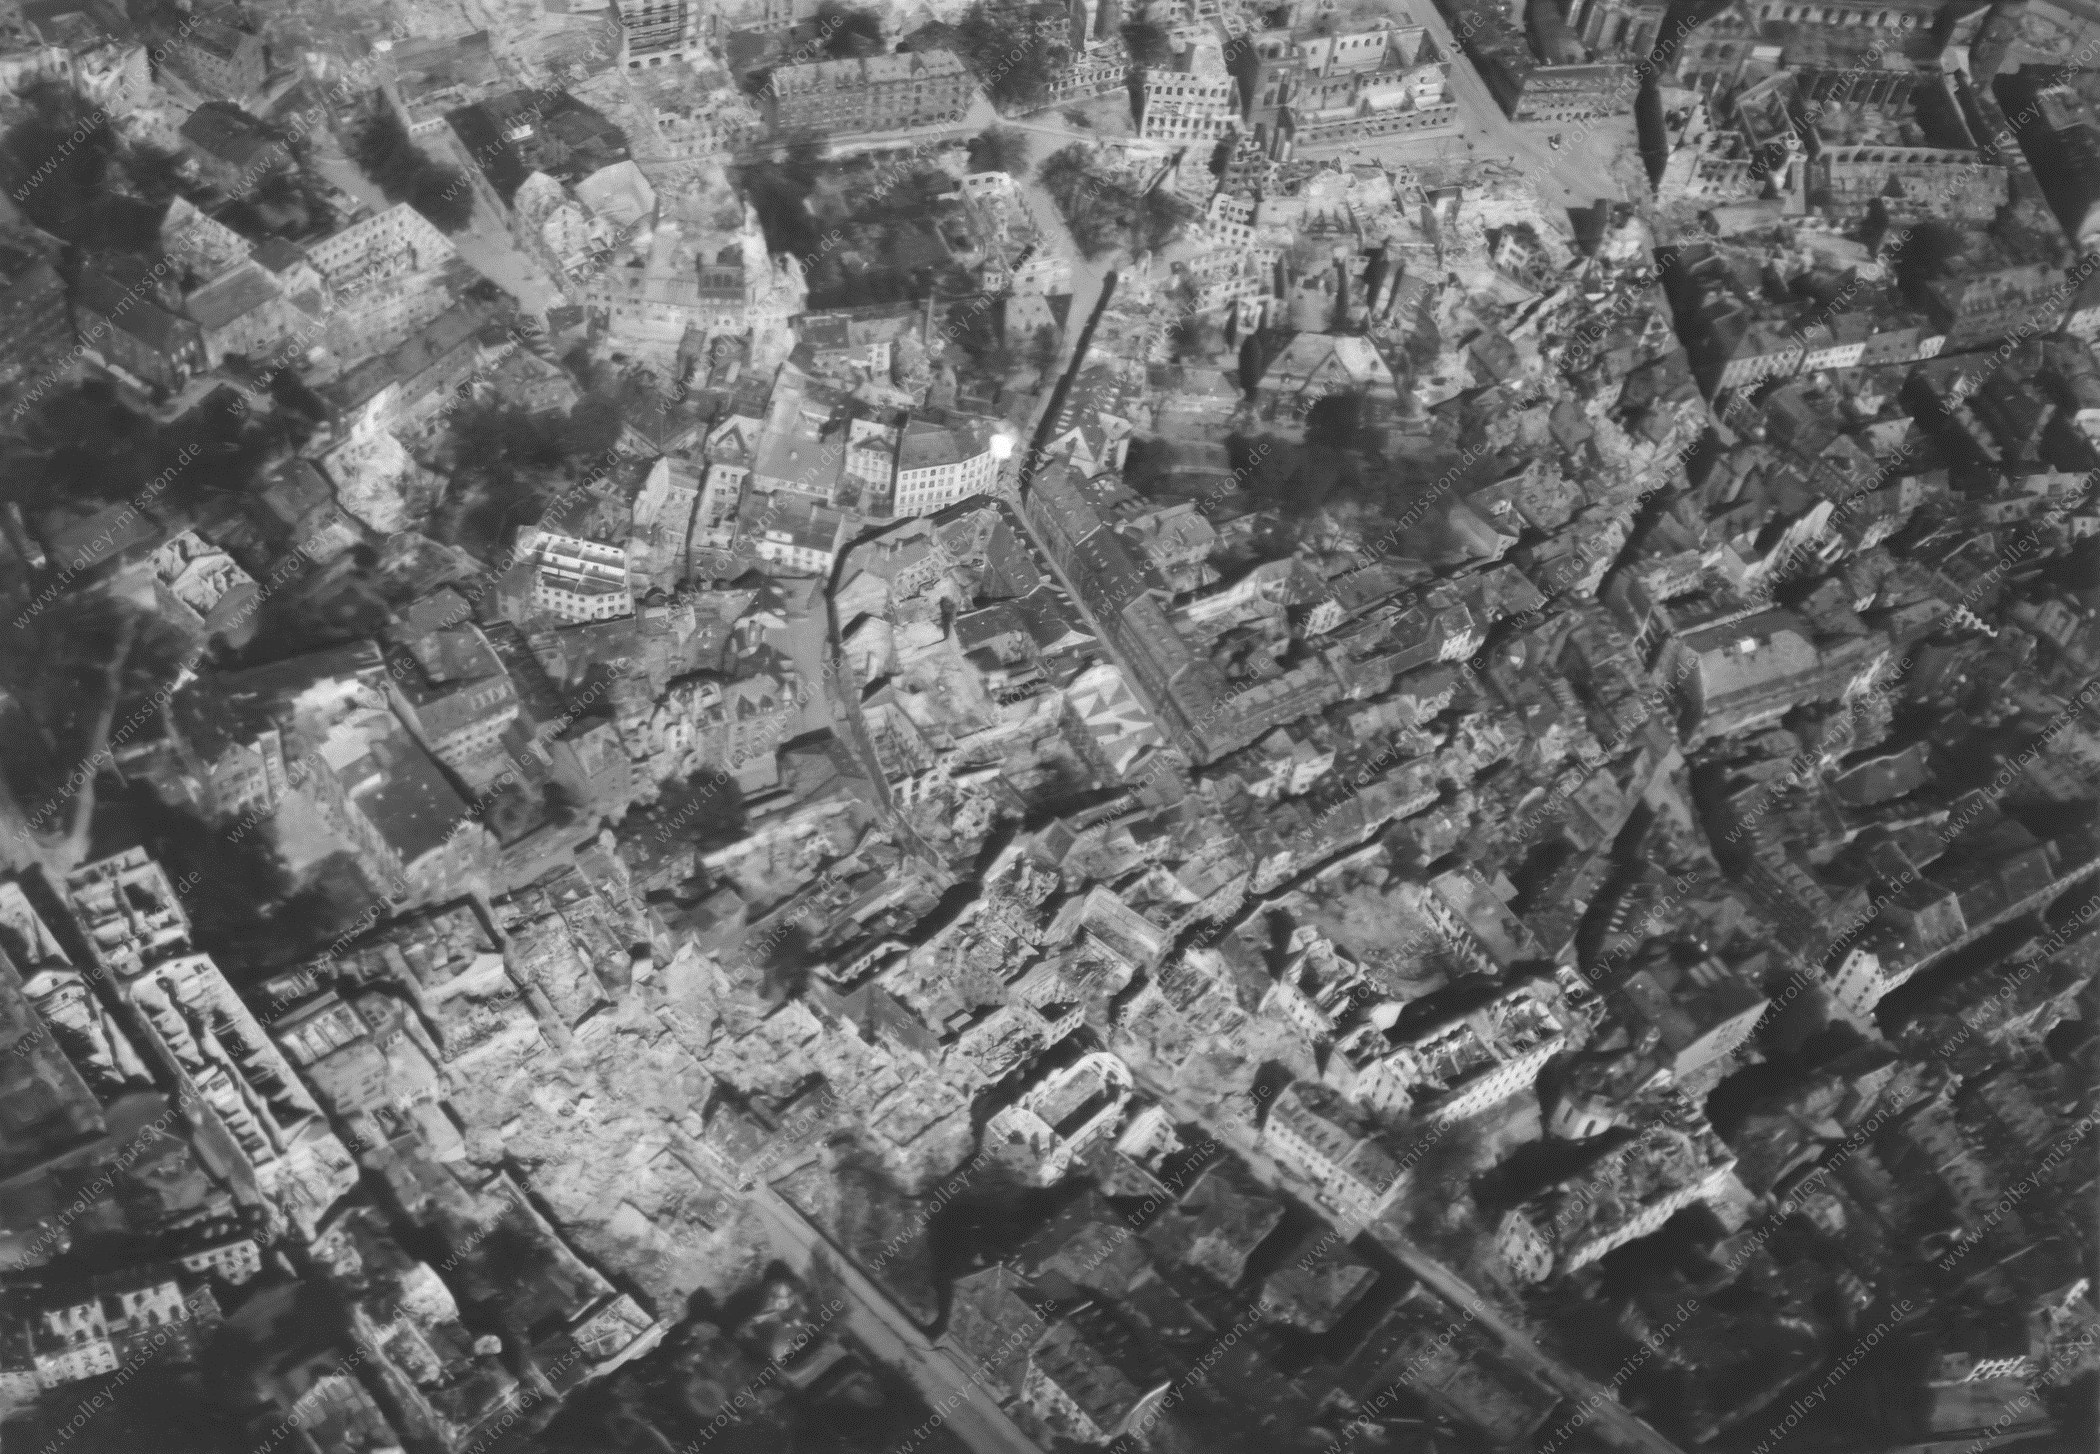 Luftaufnahme der Altstadt von Mainz nach dem Zweiten Weltkrieg